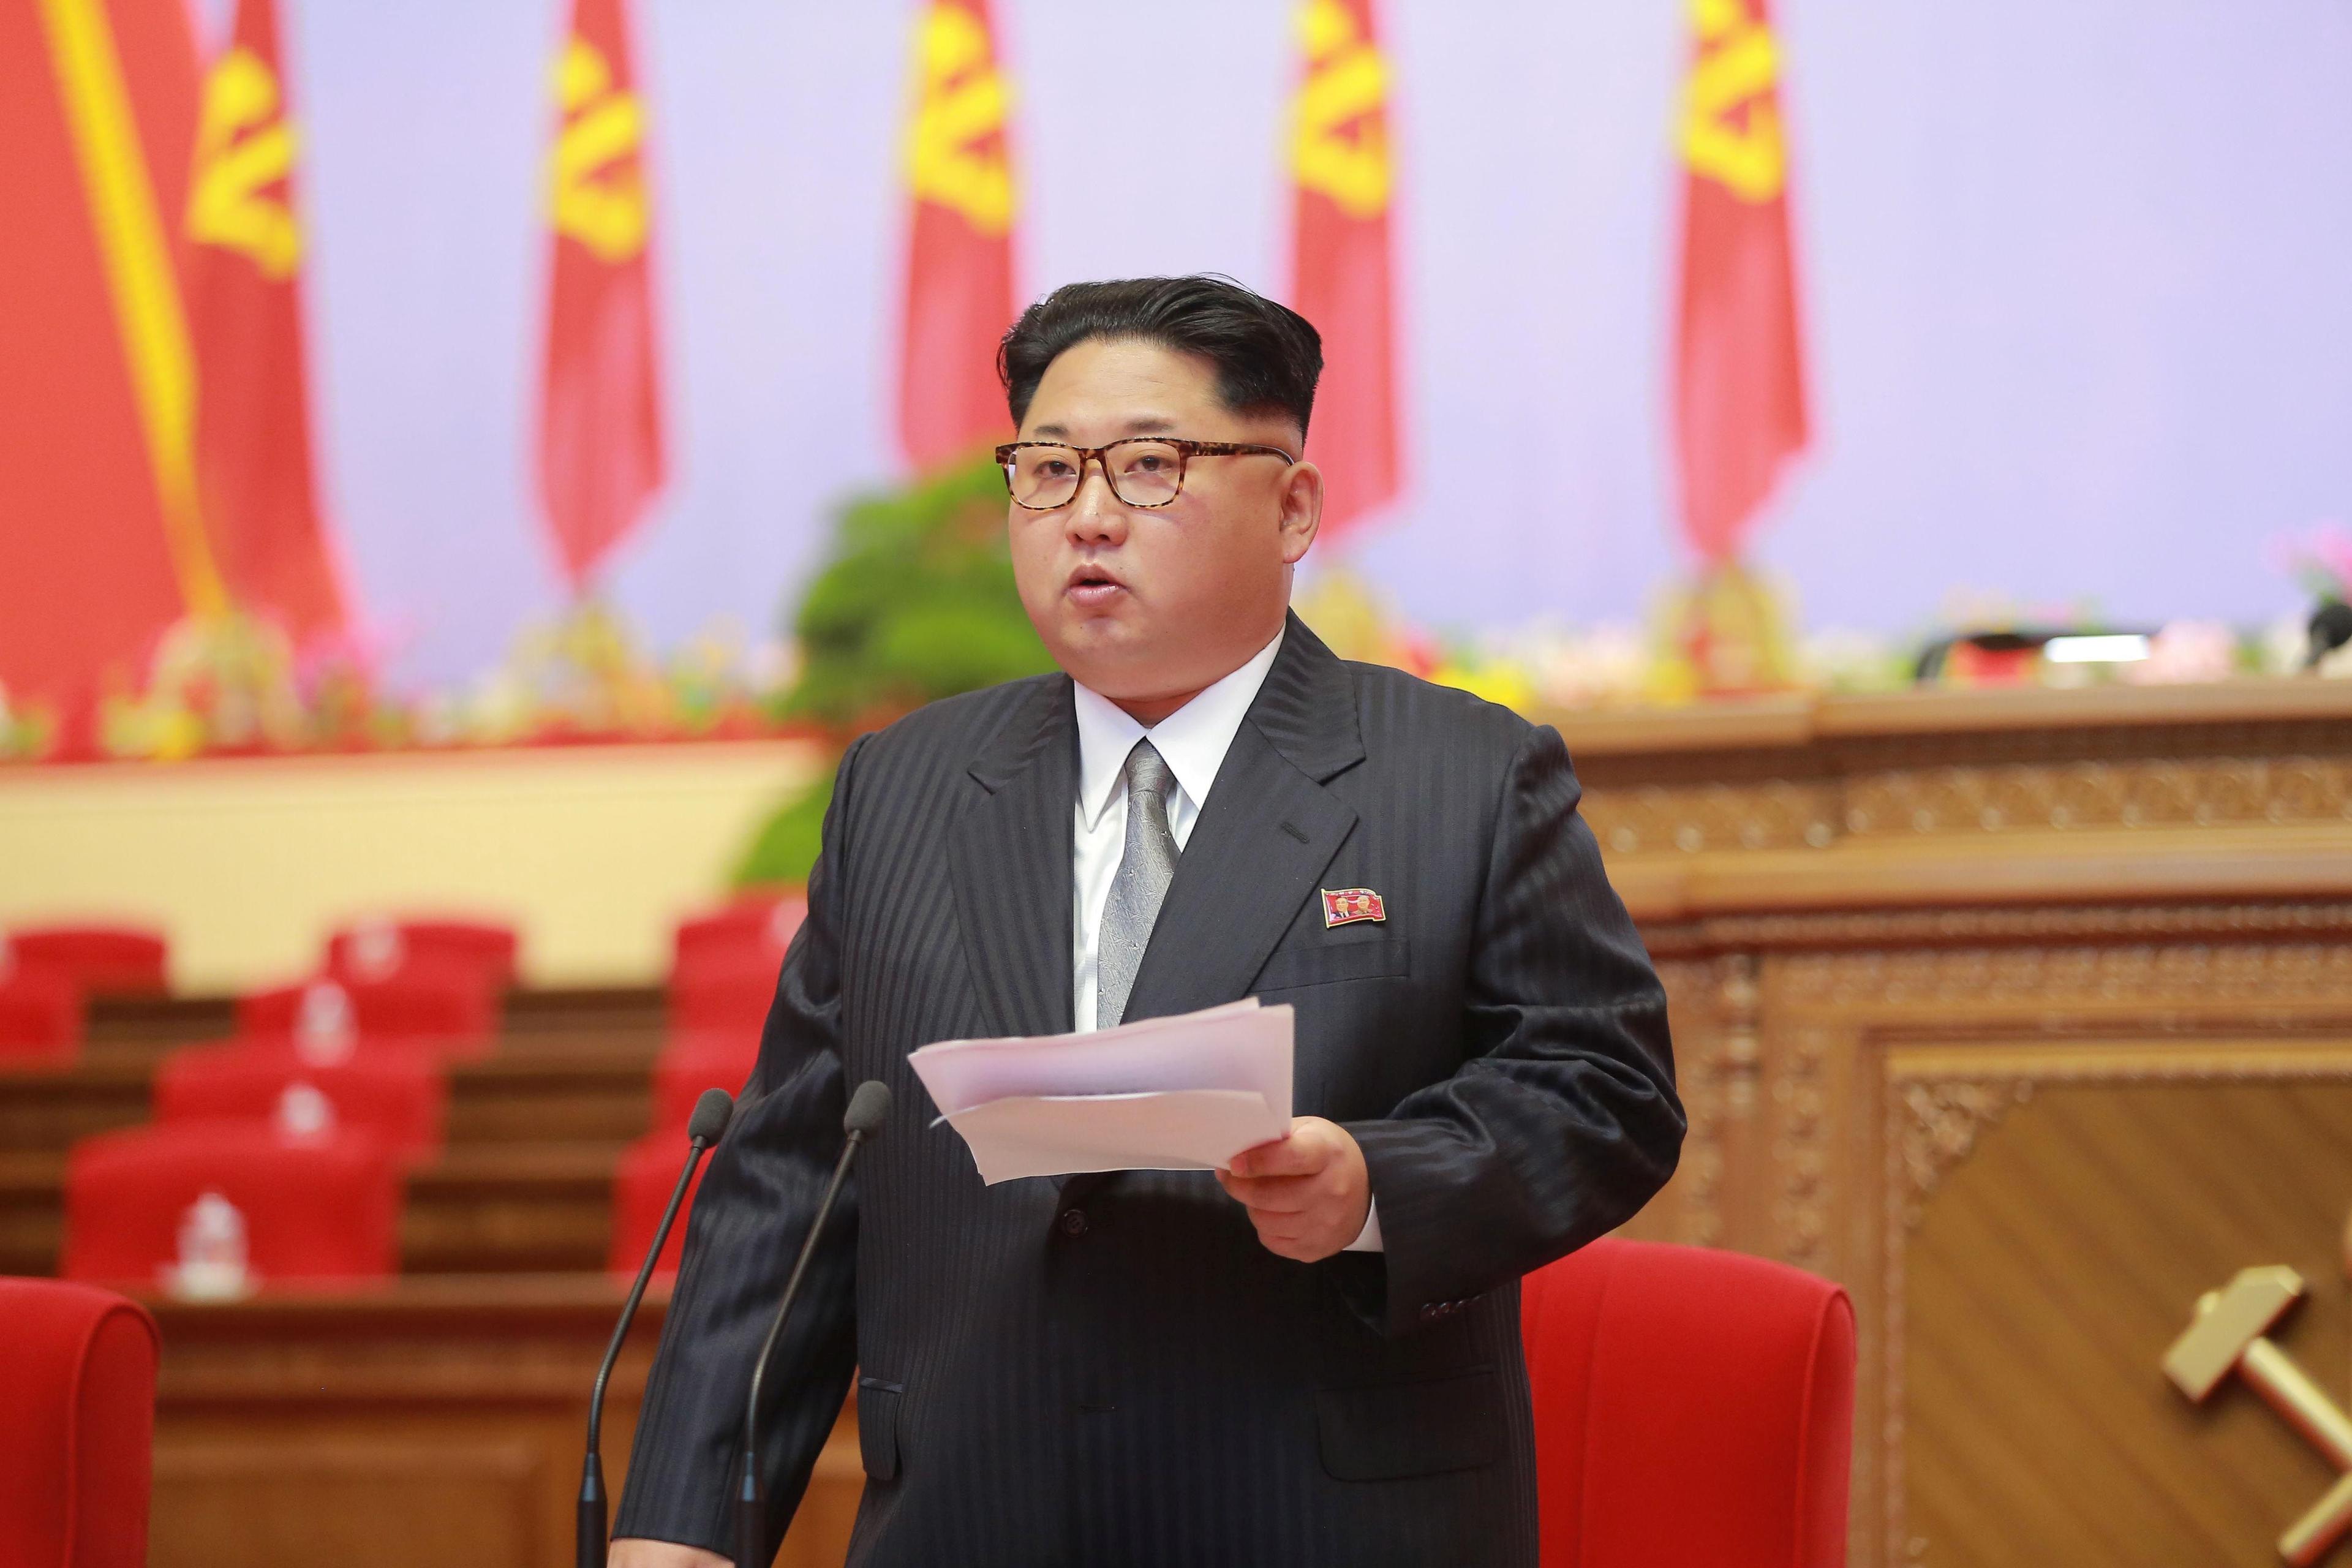 Novogodišnja poruka Kim Jong Una: Čeka nas velika borba na život ili smrt